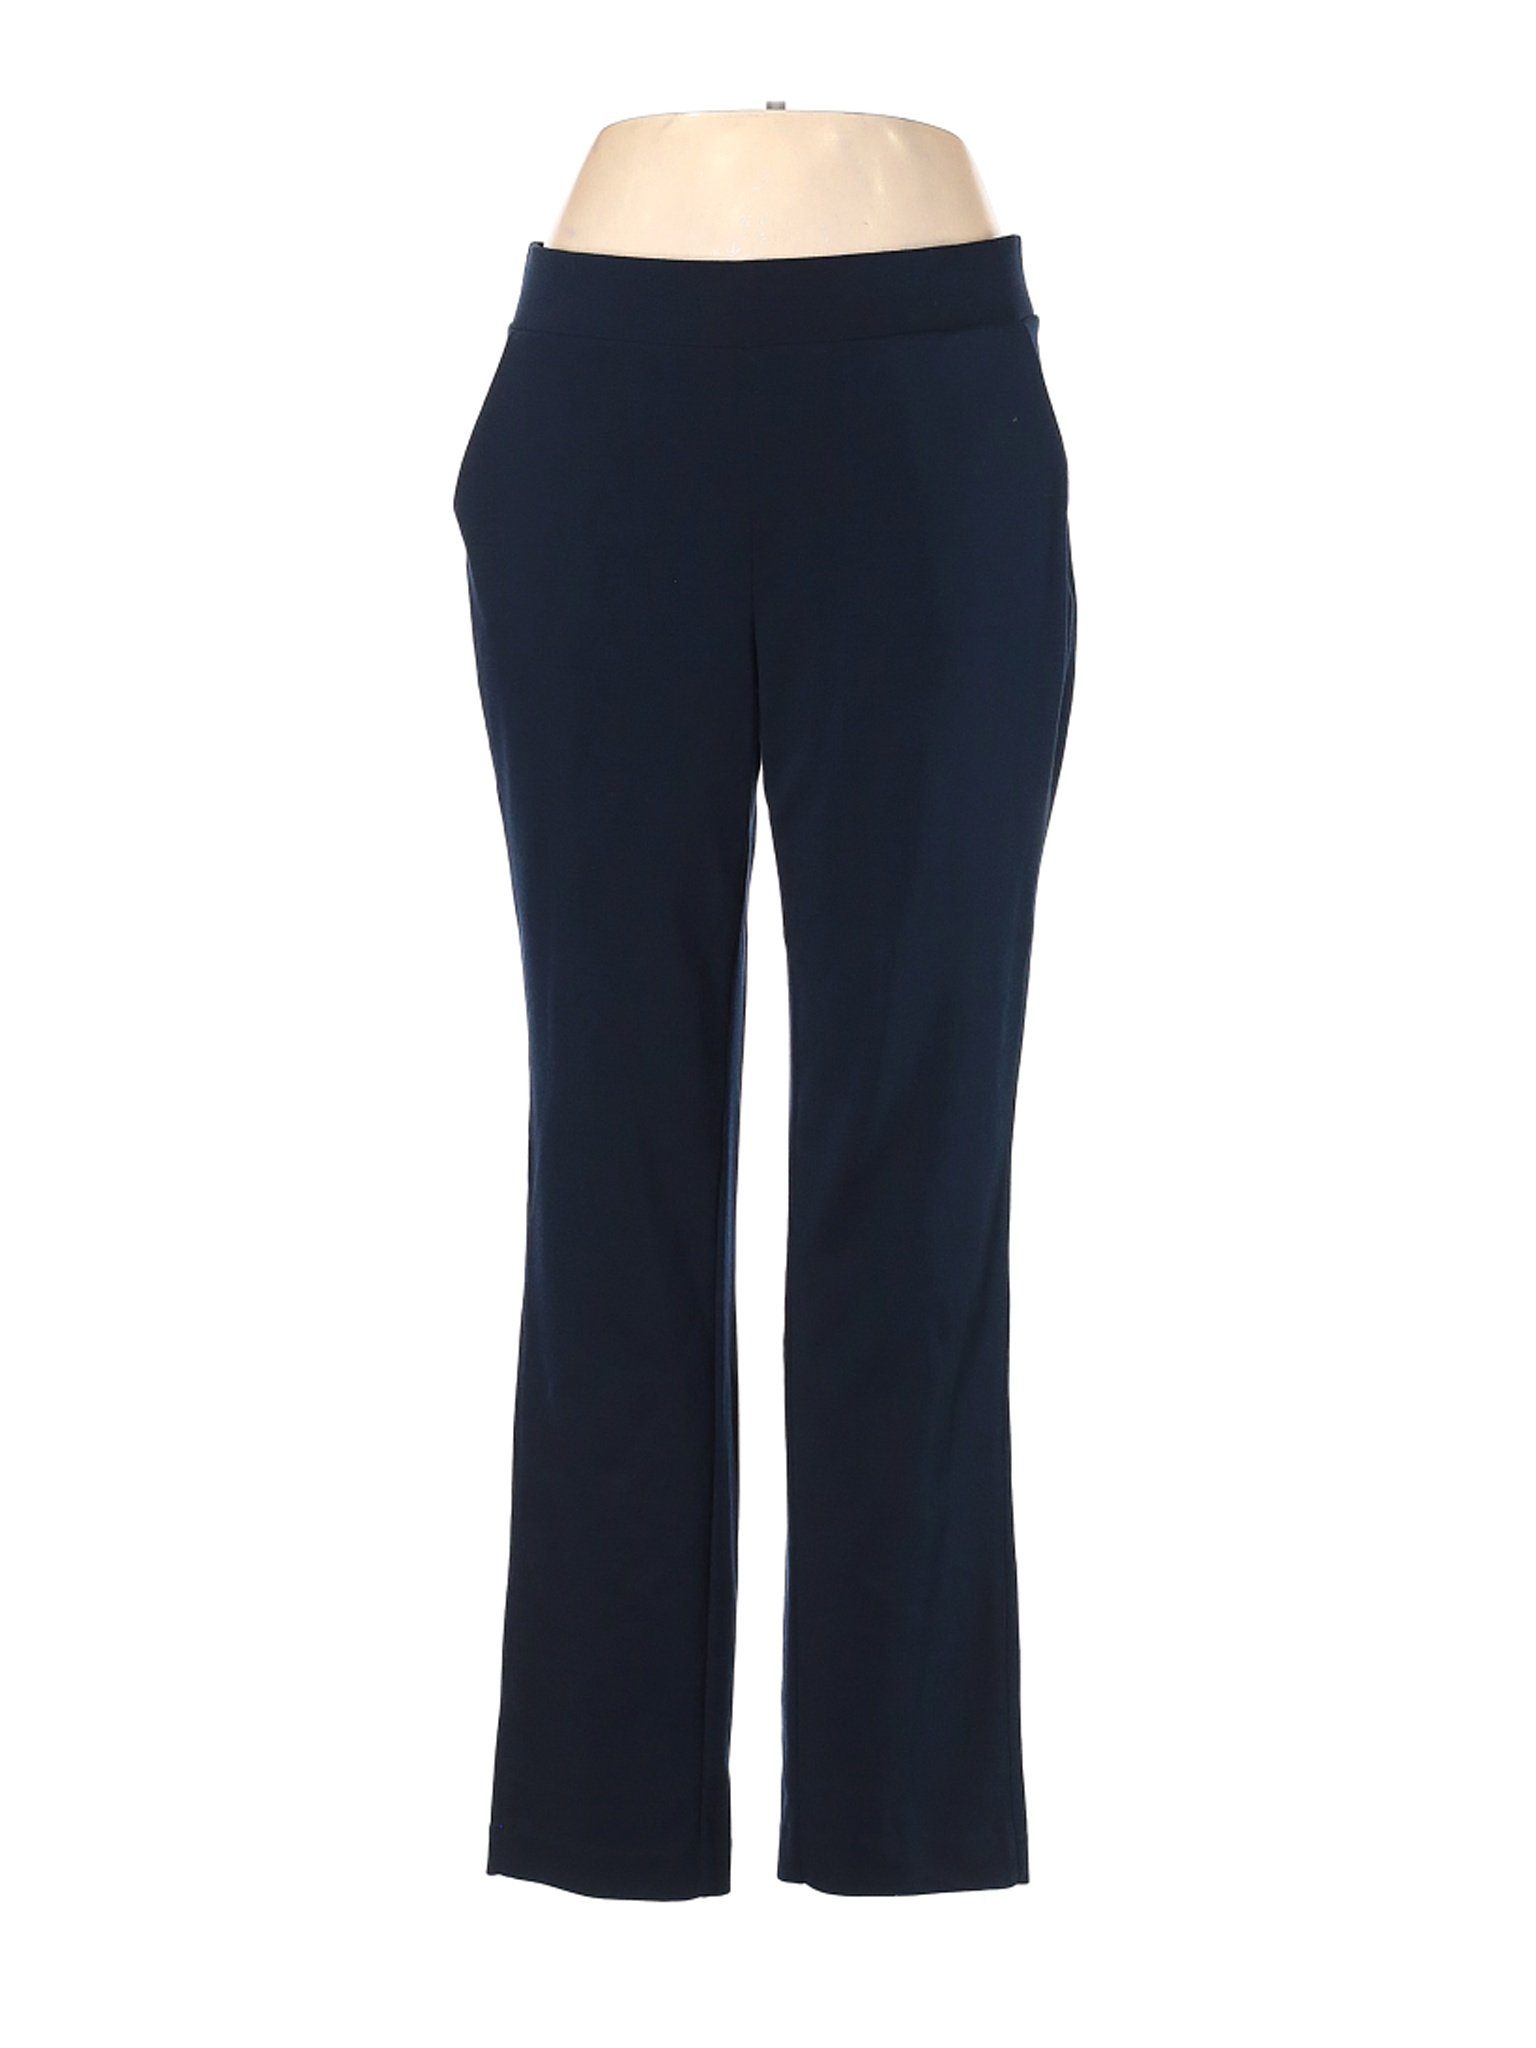 Company Ellen Tracy Women Blue Casual Pants L | eBay